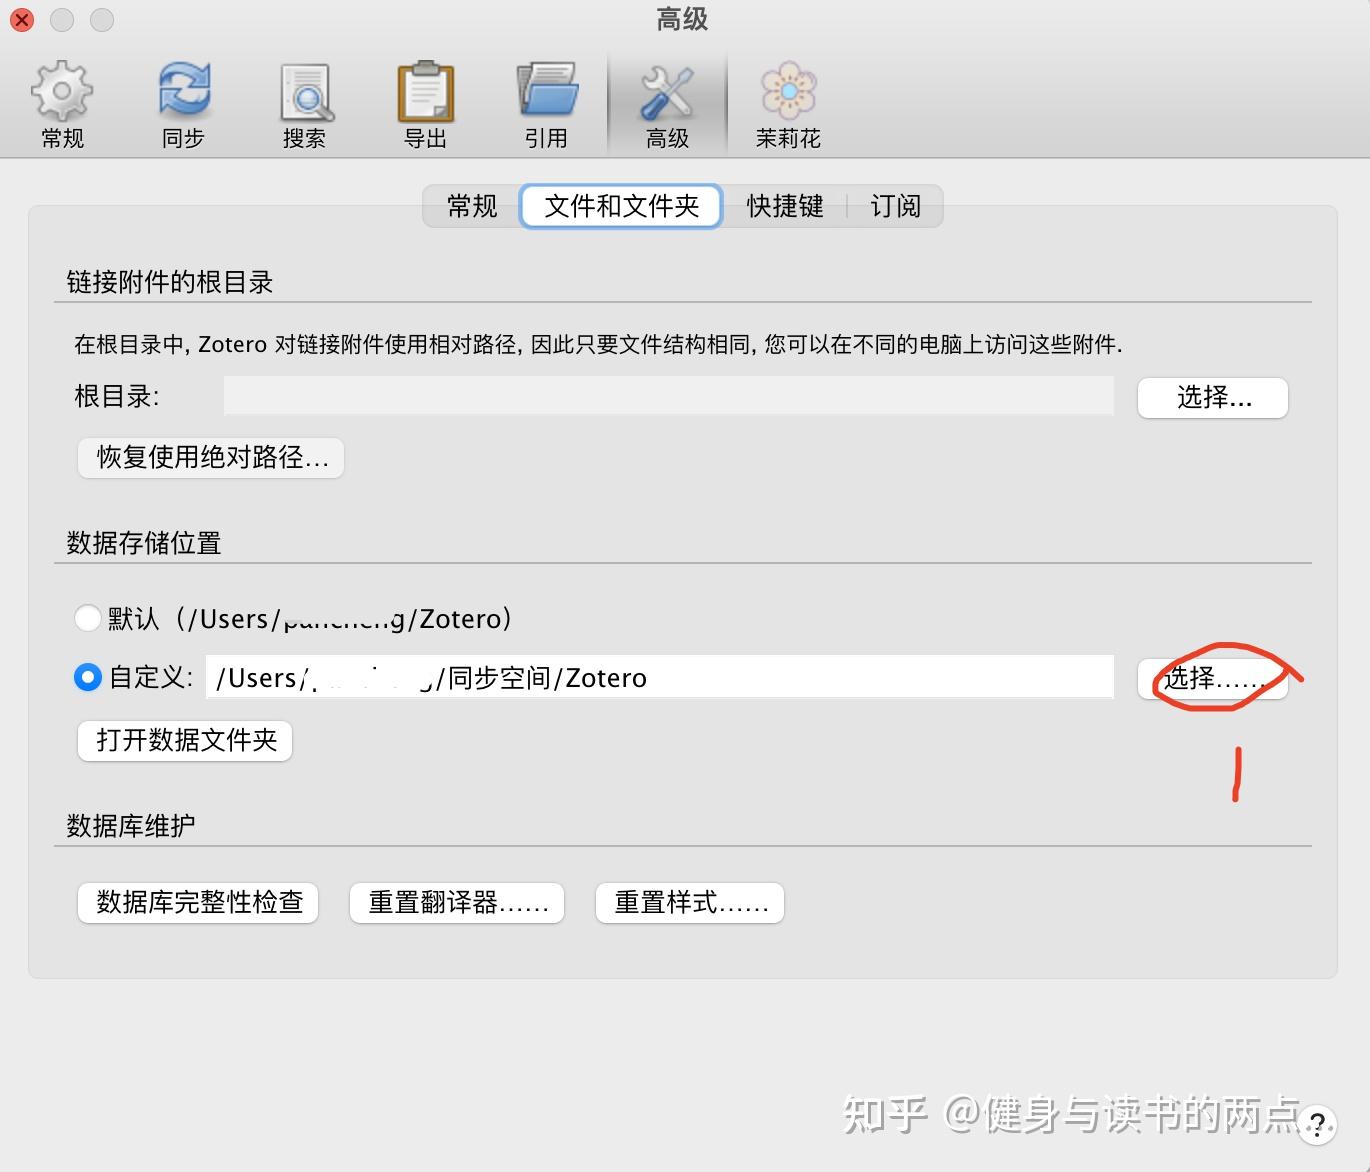 download the last version for mac Zotero 6.0.27